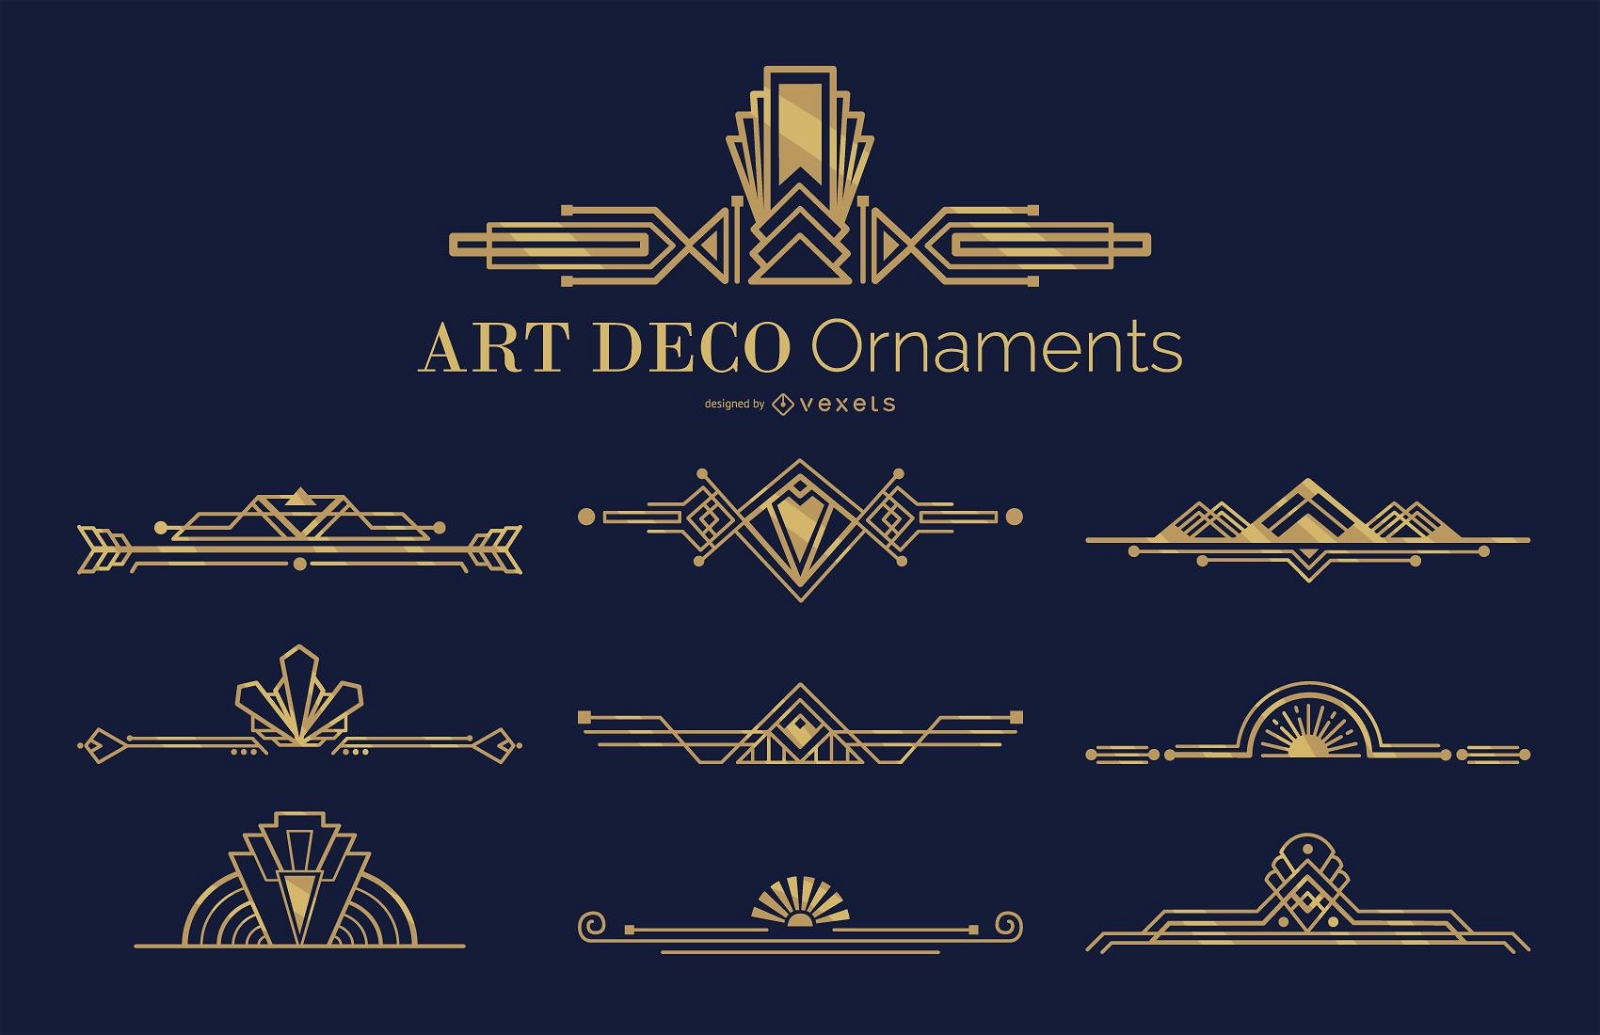 Art deco ornaments set